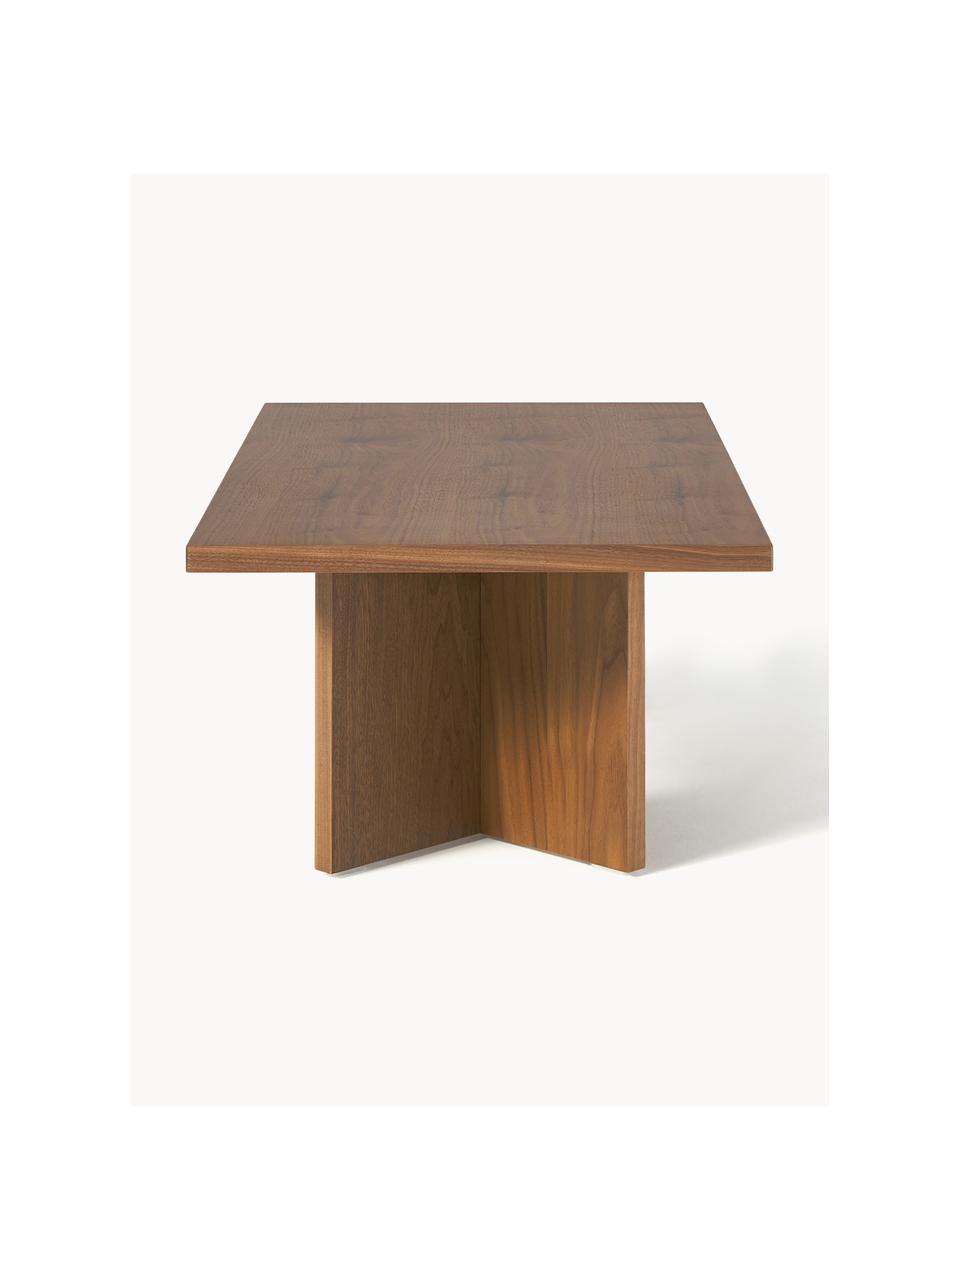 Table basse en bois Toni, MDF avec placage en bois de chêne, laqué

Ce produit est fabriqué à partir de bois certifié FSC® et issu d'une exploitation durable, Bois de noyer, Ø 100 x haut. 55 cm